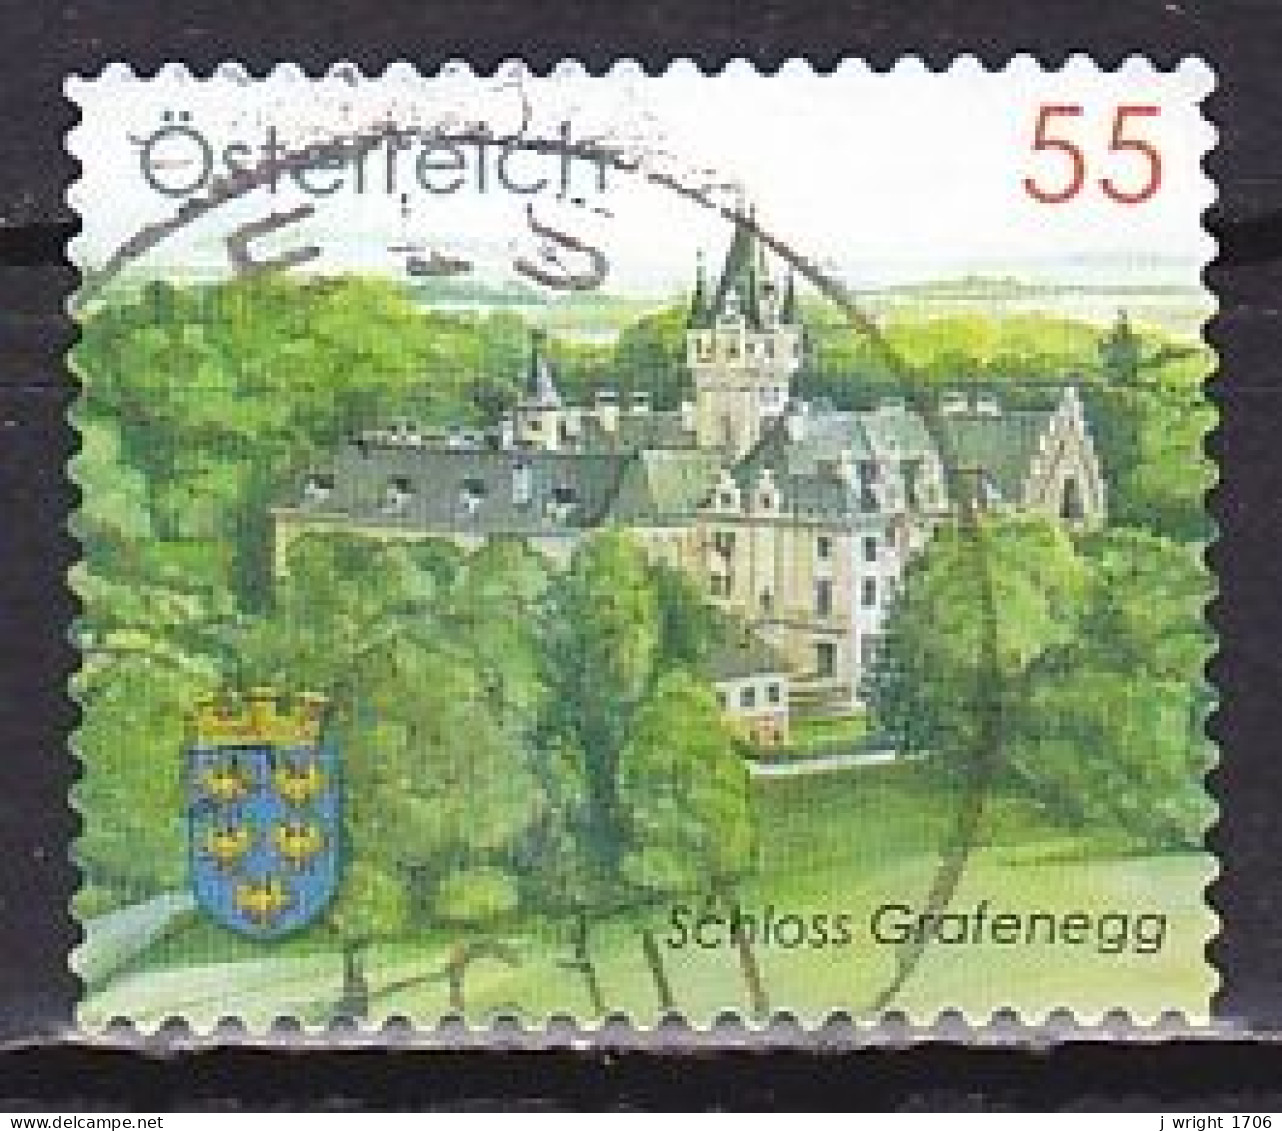 Austria, 2010, Grafenegg Castle, 55c, USED - Usados